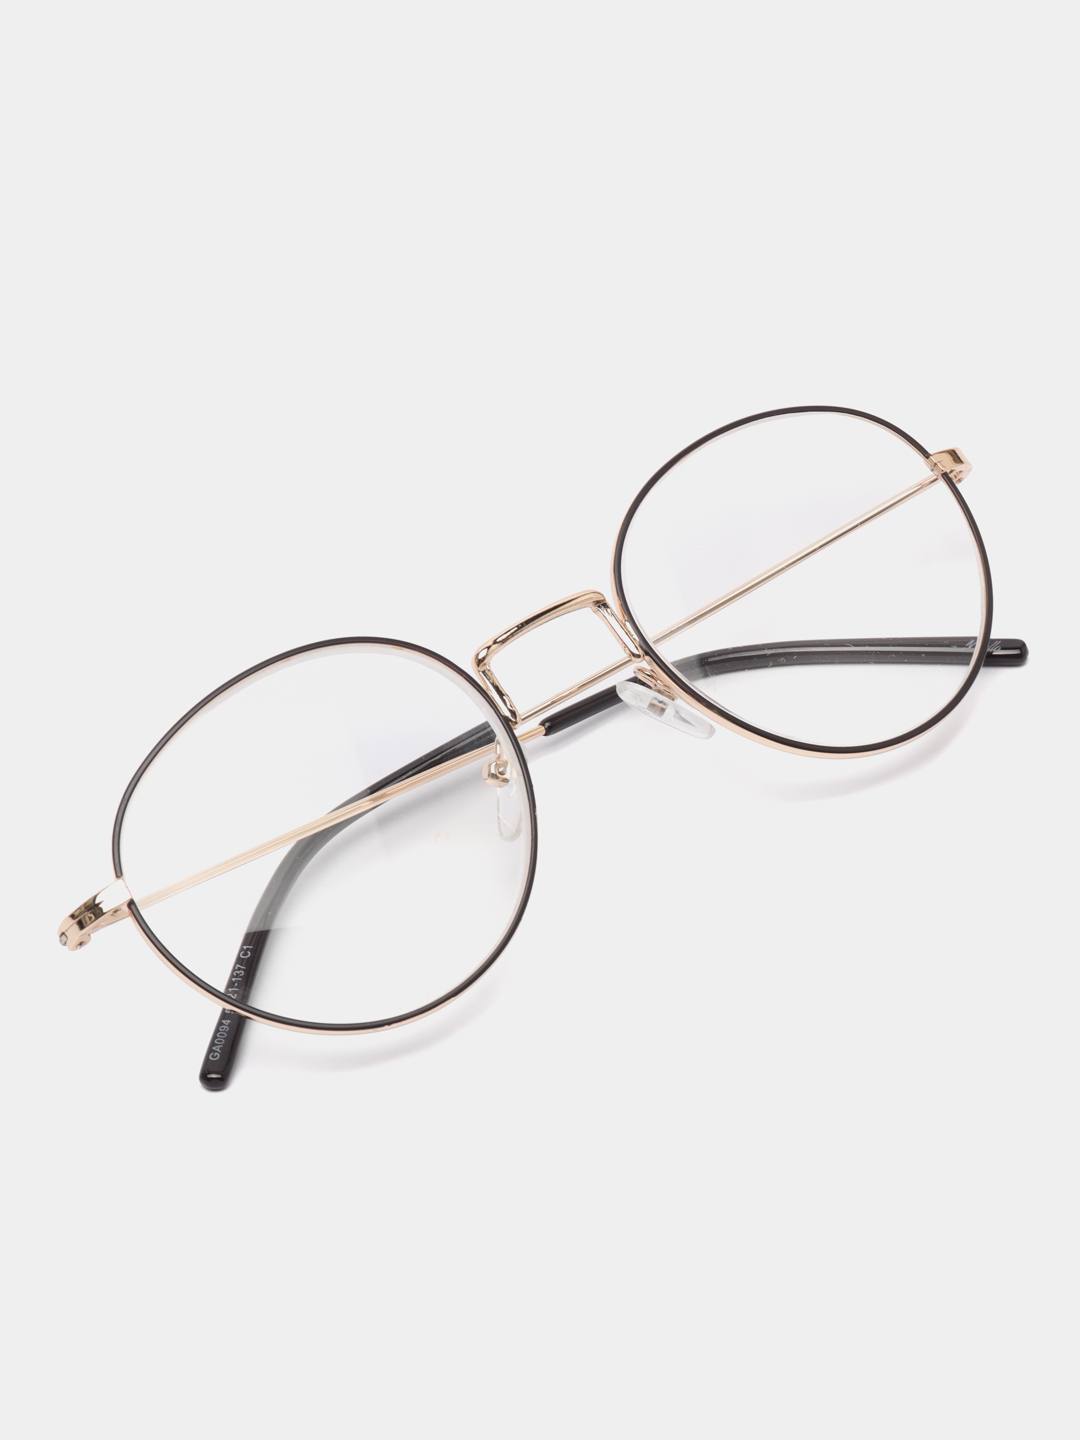 Готовые очки для зрения с диоптриями, плюс-минус  по цене 549 ₽ в .